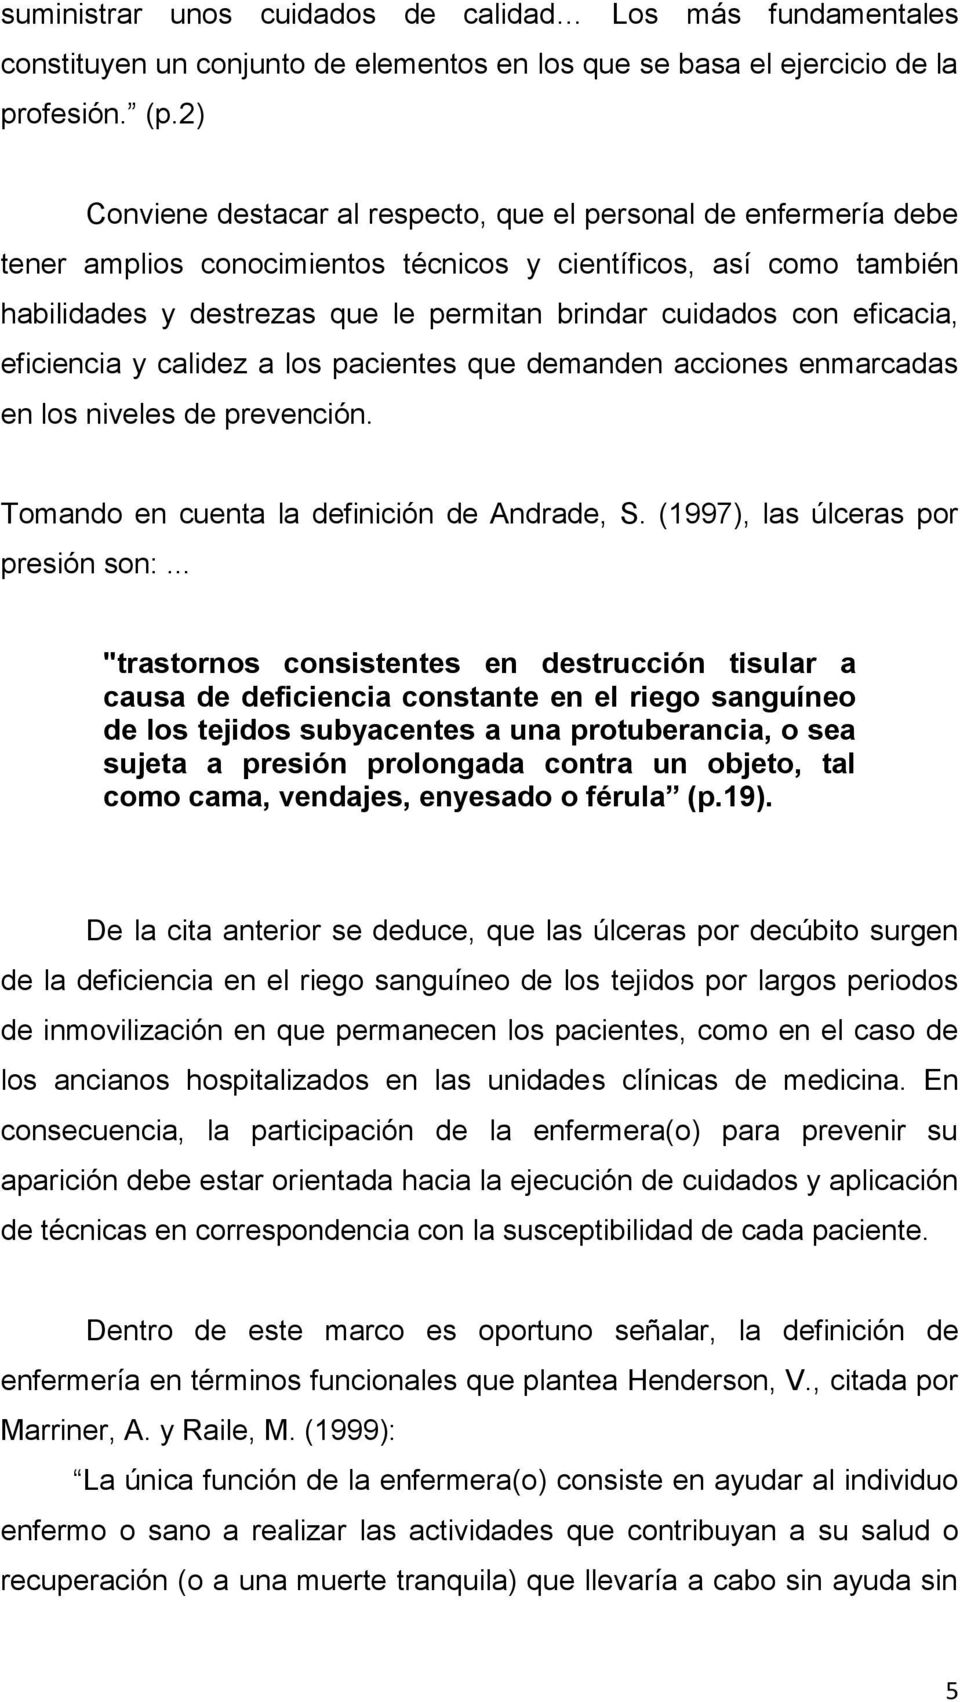 eficacia, eficiencia y calidez a los pacientes que demanden acciones enmarcadas en los niveles de prevención. Tomando en cuenta la definición de Andrade, S. (1997), las úlceras por presión son:.